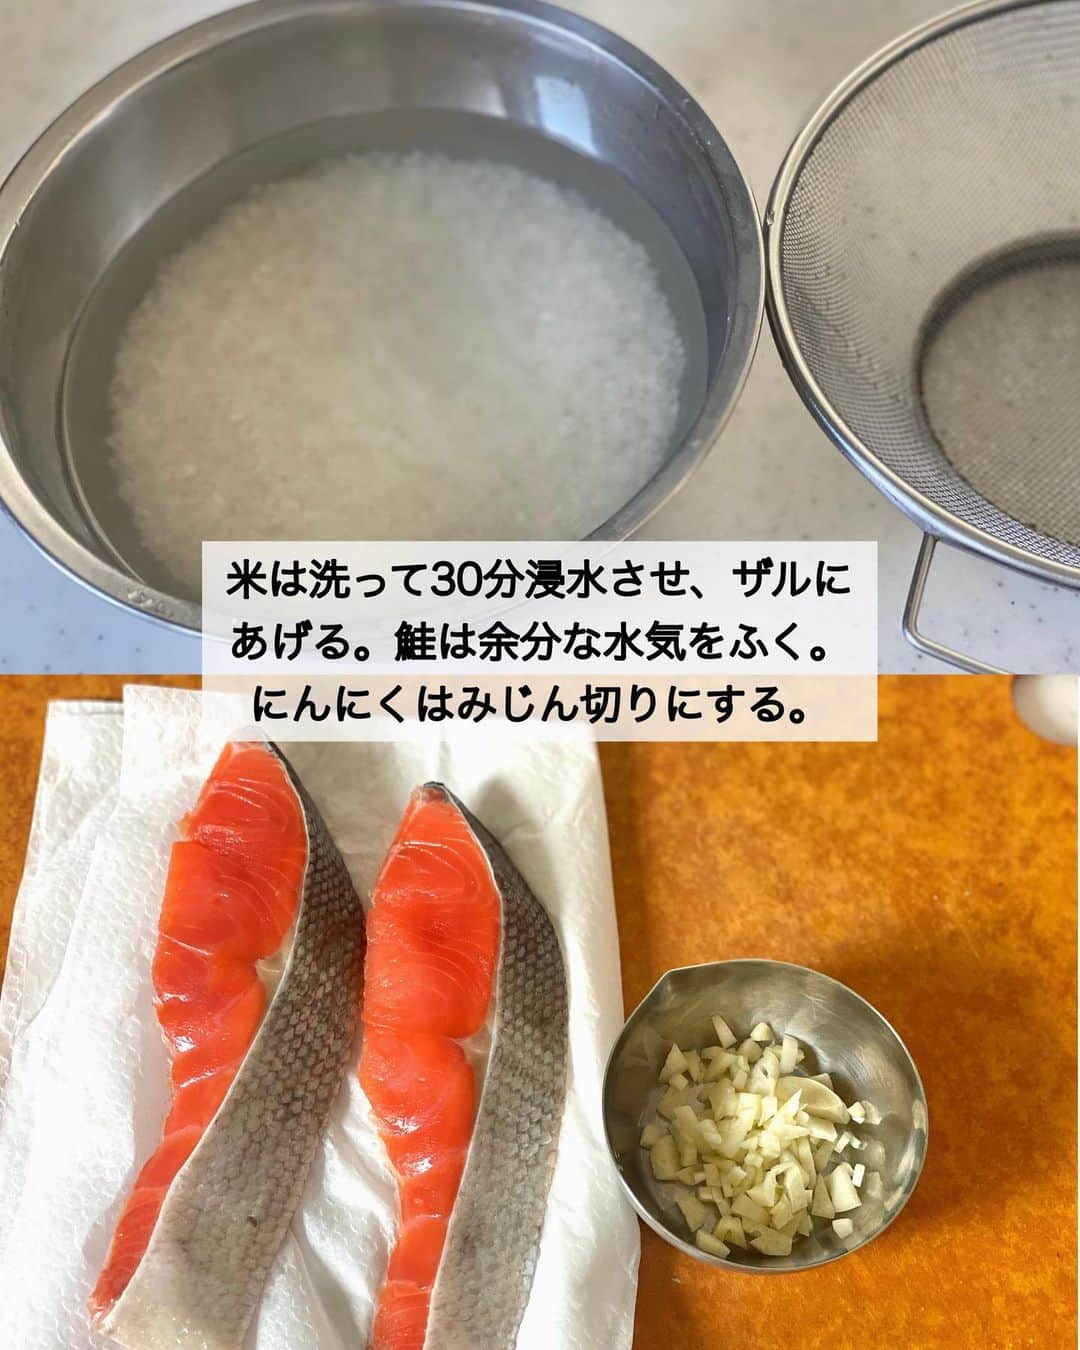 ちおりさんのインスタグラム写真 - (ちおりInstagram)「【材料入れて炊くだけ🍚✨】 ⁡ 他のレシピを見る→ @chiori.m.m をチェック✅ ⁡ ⁡ ━︎━︎━︎━︎━︎━︎━︎━︎━︎━︎━︎━︎━︎ 鮭のガリバタ醤油ごはん ⁡ Nadiaレシピ🆔 385968 ━︎━︎━︎━︎━︎━︎━︎━︎━︎━︎━︎━︎━︎ ⁡ ⁡ こんばんは(^ ^) ⁡ 今日は、忙しい日の夕飯や 休みの日ランチにおすすめの 簡単炊き込みごはんです。 ⁡ ガーリックにバターしょうゆで間違いなしの美味しさ🙆🏻‍♀️ ⁡ 仕上げに小ねぎをたっぷり散らすと 風味もよく、子どもにも大人気です😊 　 ⁡ 良かったら作ってみてください！ 詳しくは【POINT】↓↓をご覧ください^ ^ ⁡ ⁡ ________________________________________ ⁡ ⁡ ✍︎ ✍︎recipe ✍︎ ✍︎ ⁡ ⁡ 👩‍🌾【材料】米2合分 •米…………………………………2合 •鮭切り身（甘塩）……………2切れ（約160g） •にんにく…………………………1かけ A酒、みりん……………………各大さじ2 Aめんつゆ（3倍濃縮）……大さじ1 Aしょうゆ………………………小さじ1 A和風だしの素…………………小さじ1/2 •バター……………………………10〜20g •しょうゆ（仕上げ用）……小さじ1/2〜 •小ねぎ……………………………適量 ⁡ ⁡ ________________________________________ ⁡ ⁡ ⁡ 👩‍🍳【作り方】 ❶米は洗って30分浸水させ、ザルにあげる。鮭は余分な水気をふく。にんにくはみじん切りにする。 ⁡ ❷炊飯器に米と【A】を入れてから、2合の線まで水を足して混ぜる。鮭をのせてにんにくを散らし炊き込みモード（または普通モード）で炊飯する。 ⁡ ❸炊き上がったら鮭の皮と小骨をとり、バターとしょうゆ（仕上げ用）を加えて均一に混ぜる。 ⁡ ❹器に盛り、小ねぎを散らす。 ⁡ ⁡ ________________________________________ ⁡ ⁡ ⁡ 📝【POINT】 •大きめサイズの鮭をお使いになる場合は調味料の量を減らしてください。 ⁡ •にんにくはにんにくチューブ小さじ1で代用OK。 生姜で代用しても美味しいです。 ⁡ •バターはマーガリンで代用OKです。 ⁡ •めんつゆ2倍濃縮なら大さじ1と1/2 4倍濃縮なら大さじ1弱です。 ⁡ •仕上げのしょうゆで香りがアップします。 小さじ1/2〜お好みで量を増やしてください。 ⁡ •米3合で作る場合は材料、調味料ともに1.5倍。（鮭は3枚でOK）4合で作る場合は2倍にしてください。 ⁡ •出来上がった2合分を全て冷凍する場合は 4等分にわけてひとつずつ平たくラップで包み 保存袋に入れて冷凍します。 （保存期間は約3週間） 解凍方法はひとつずつ凍ったままレンジ600wで2分加熱。裏返して600wで30秒加熱。冷たい部分が残っていたらさらに10秒ずつ加熱します。 ⁡ ⁡ ⁡ ≡︎≡︎≡︎≡︎≡︎≡︎≡︎≡︎≡︎≡︎≡︎≡︎≡︎≡︎≡︎≡︎≡︎≡︎≡︎≡︎≡︎≡︎≡︎≡︎≡︎≡︎≡︎≡︎≡︎≡︎≡︎≡︎≡︎≡︎ 【✅新刊レシピ本のお知らせ】 📕ちおり流くり返し作りたいおかず 🙇🏻‍♀️おかげ様で書籍累計10万部を突破しました。 ⁡ ⁡ 全国の書店、Amazon、楽天ブックス 宝島チャンネルにて発売中です。 ⁡ ➤ ➤ ➤ @chiori.m.m のストーリーハイライト。 プロフィールのリンクからご覧いただけます😊 📗ちおりの簡単絶品おかず１、２ 既刊もぜひご覧いただきたいです。 ⁡ ≡︎≡︎≡︎≡︎≡︎≡︎≡︎≡︎≡︎≡︎≡︎≡︎≡︎≡︎≡︎≡︎≡︎≡︎≡︎≡︎≡︎≡︎≡︎≡︎≡︎≡︎≡︎≡︎≡︎≡︎≡︎≡︎≡︎≡︎ ⁡ ⁡ 最後までご覧いただきありがとうございます☺️ ⁑ ⁑ ⁑ ⁑ ⁑ ⁑ ⁑ ⁑ #炊き込みごはん #炊き込みご飯   #Nadiaレシピ #Nadiaartist  #japanesefood   #食卓 #献立 #簡単ごはん #作り置き  #簡単レシピ #節約レシピ #時短レシピ  #日々の暮らし #作り置きレシピ #冷凍保存   #夕飯レシピ #お弁当レシピ #基本のレシピ  #料理初心者  #おつまみレシピ #鮭レシピ  #レシピ #炊き込みご飯レシピ #炊飯器レシピ  #料理レシピ #にんにく料理 #にんにくレシピ」5月18日 20時59分 - chiori.m.m